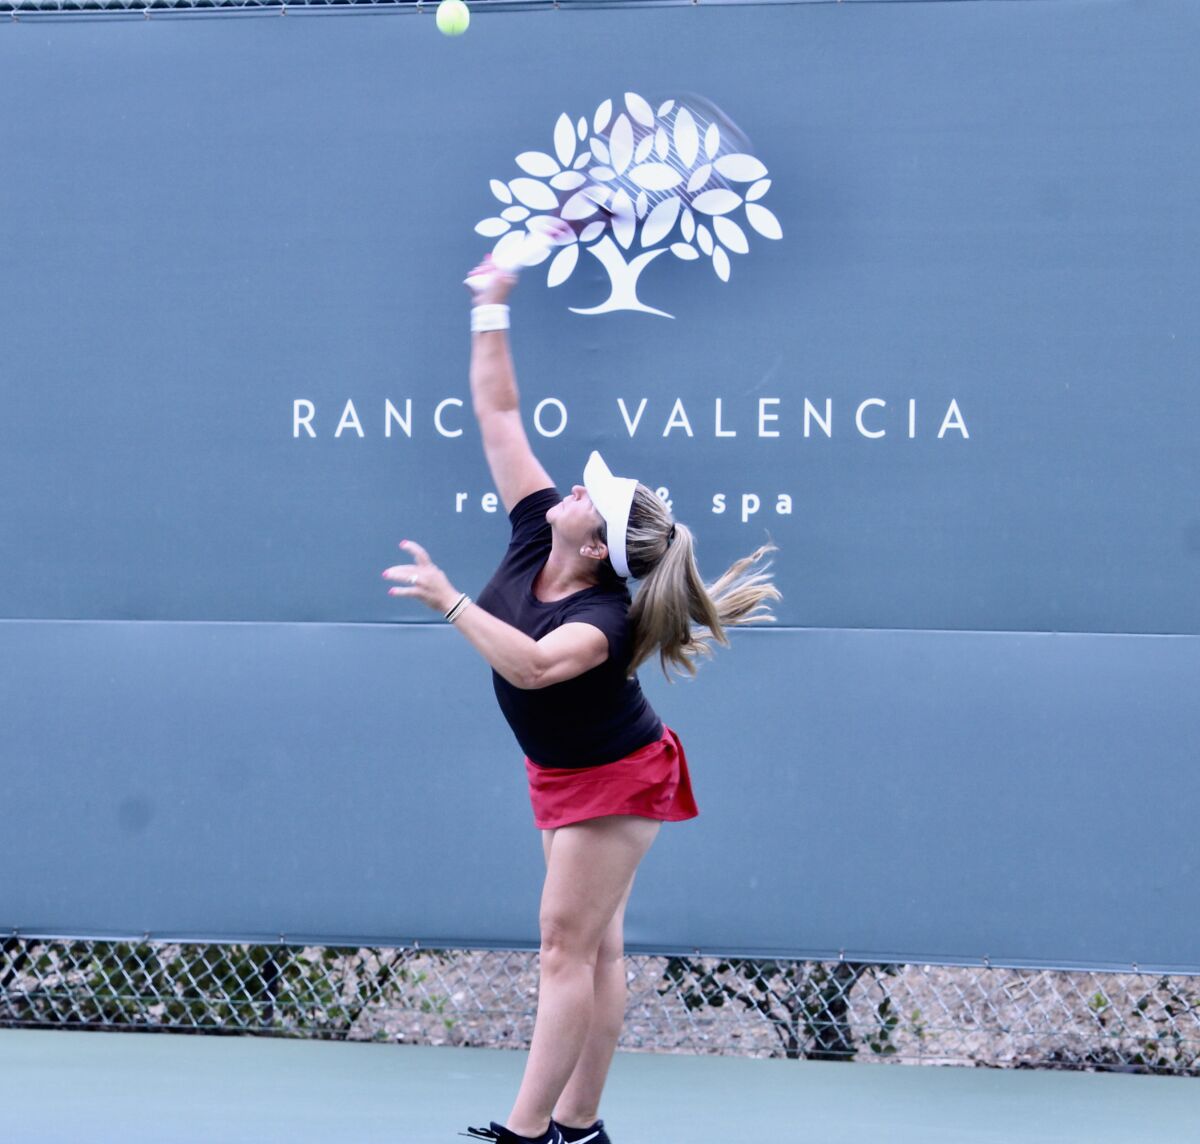 A player at last year’s Sean Eduardo Sanchez Tennis Center fundraising Pro-Am tennis tournament.